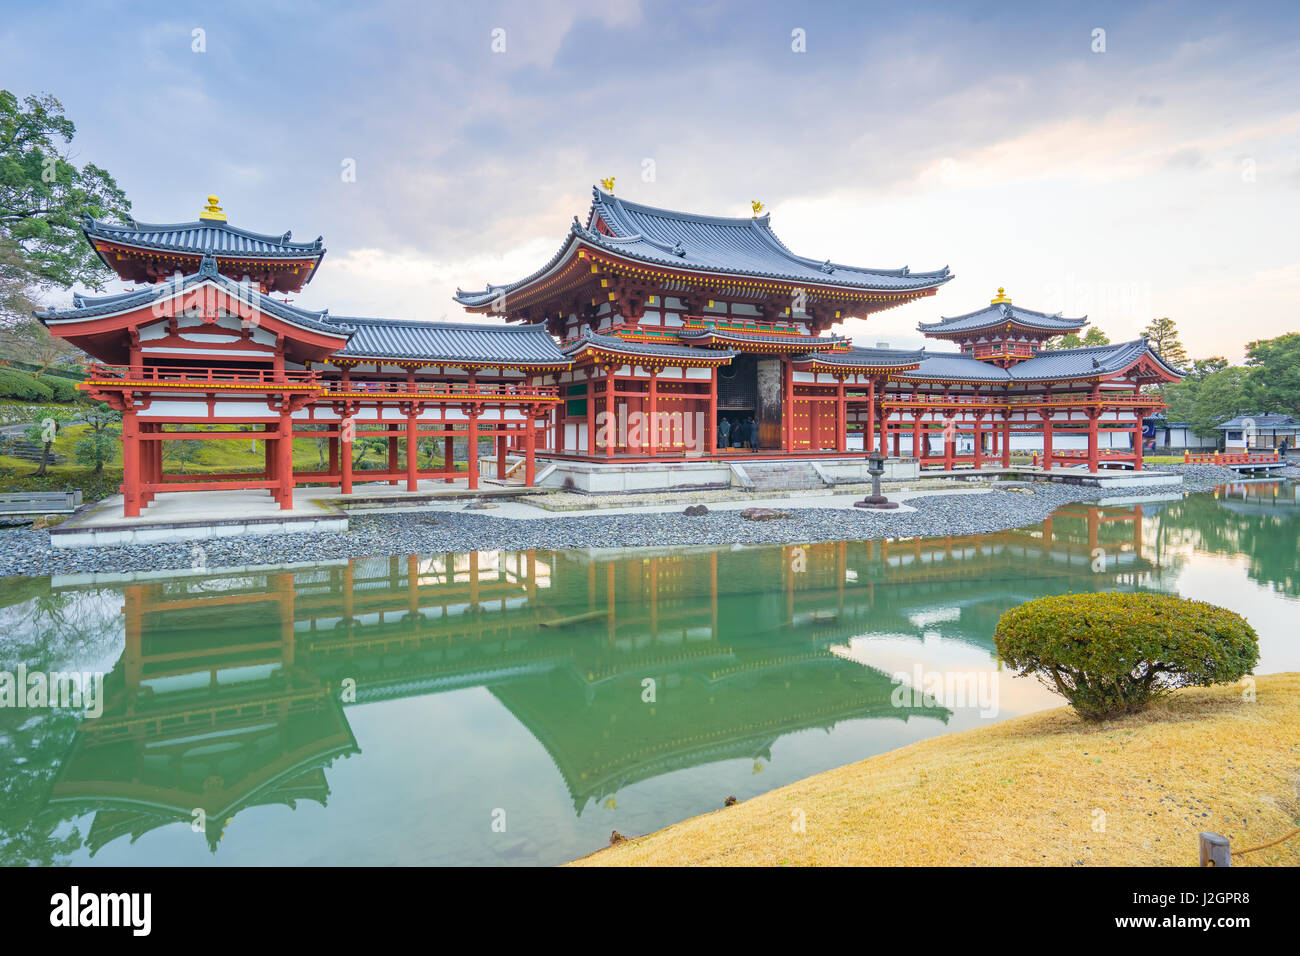 Kyoto, Giappone - 31 dicembre 2015: Byodo-in è un tempio buddista nella città di Uji nella prefettura di Kyoto, Giappone. Esso è congiuntamente un tempio di Jodo-shu Foto Stock